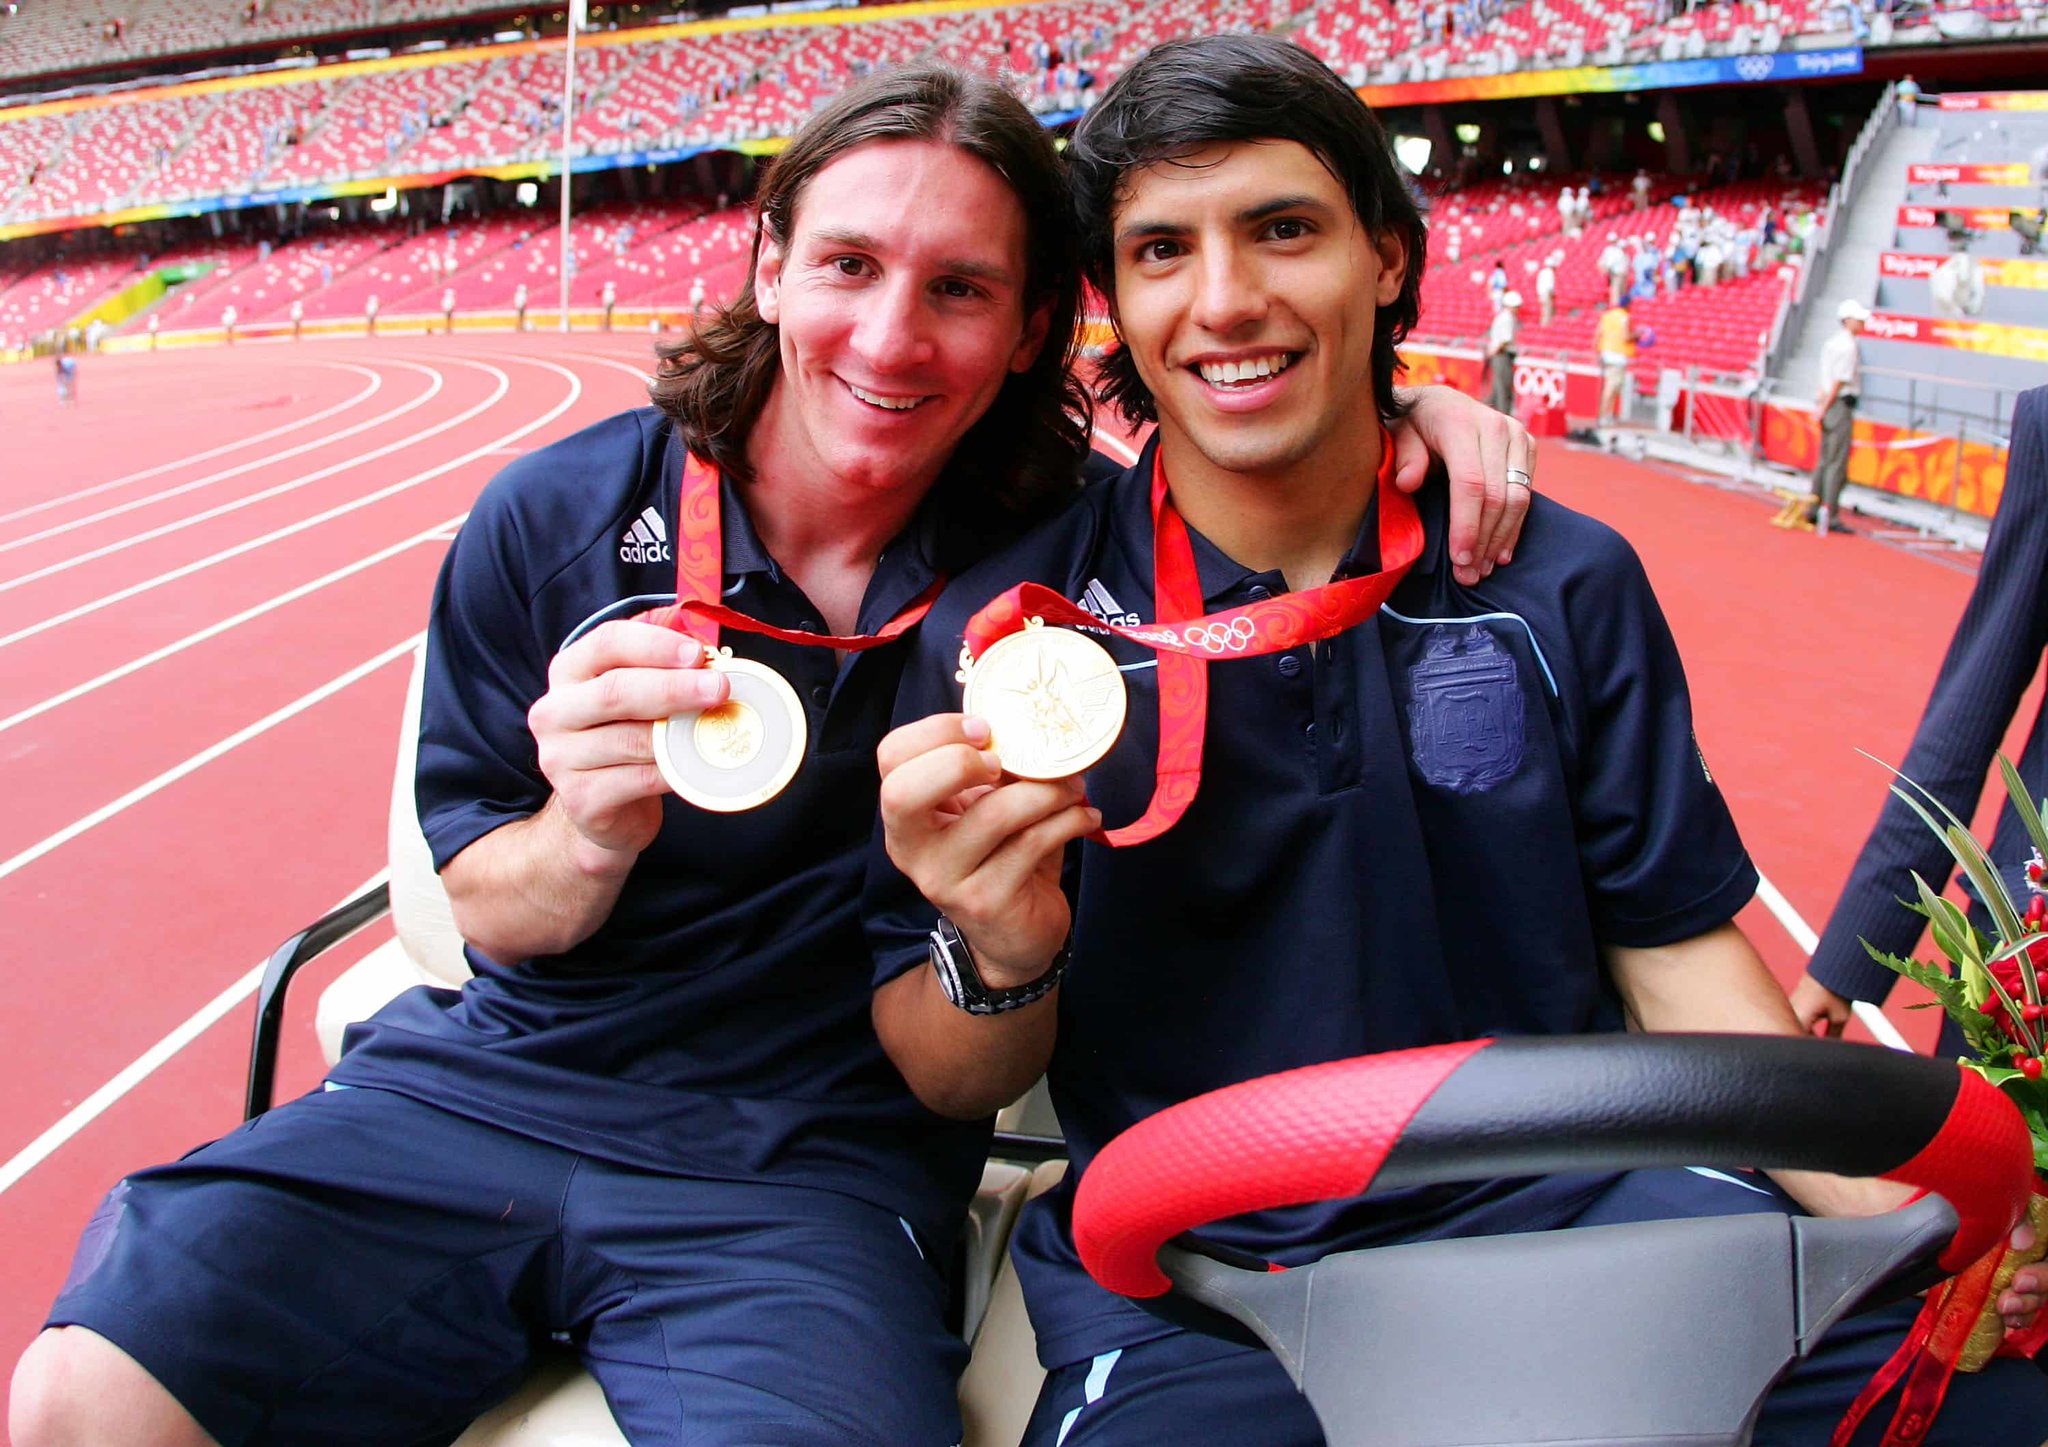 Lionel Messi junto a Sergio Agüero en los Juegos Olímpicos de Beijing 2008 (Foto: Twitter/ @carespre)